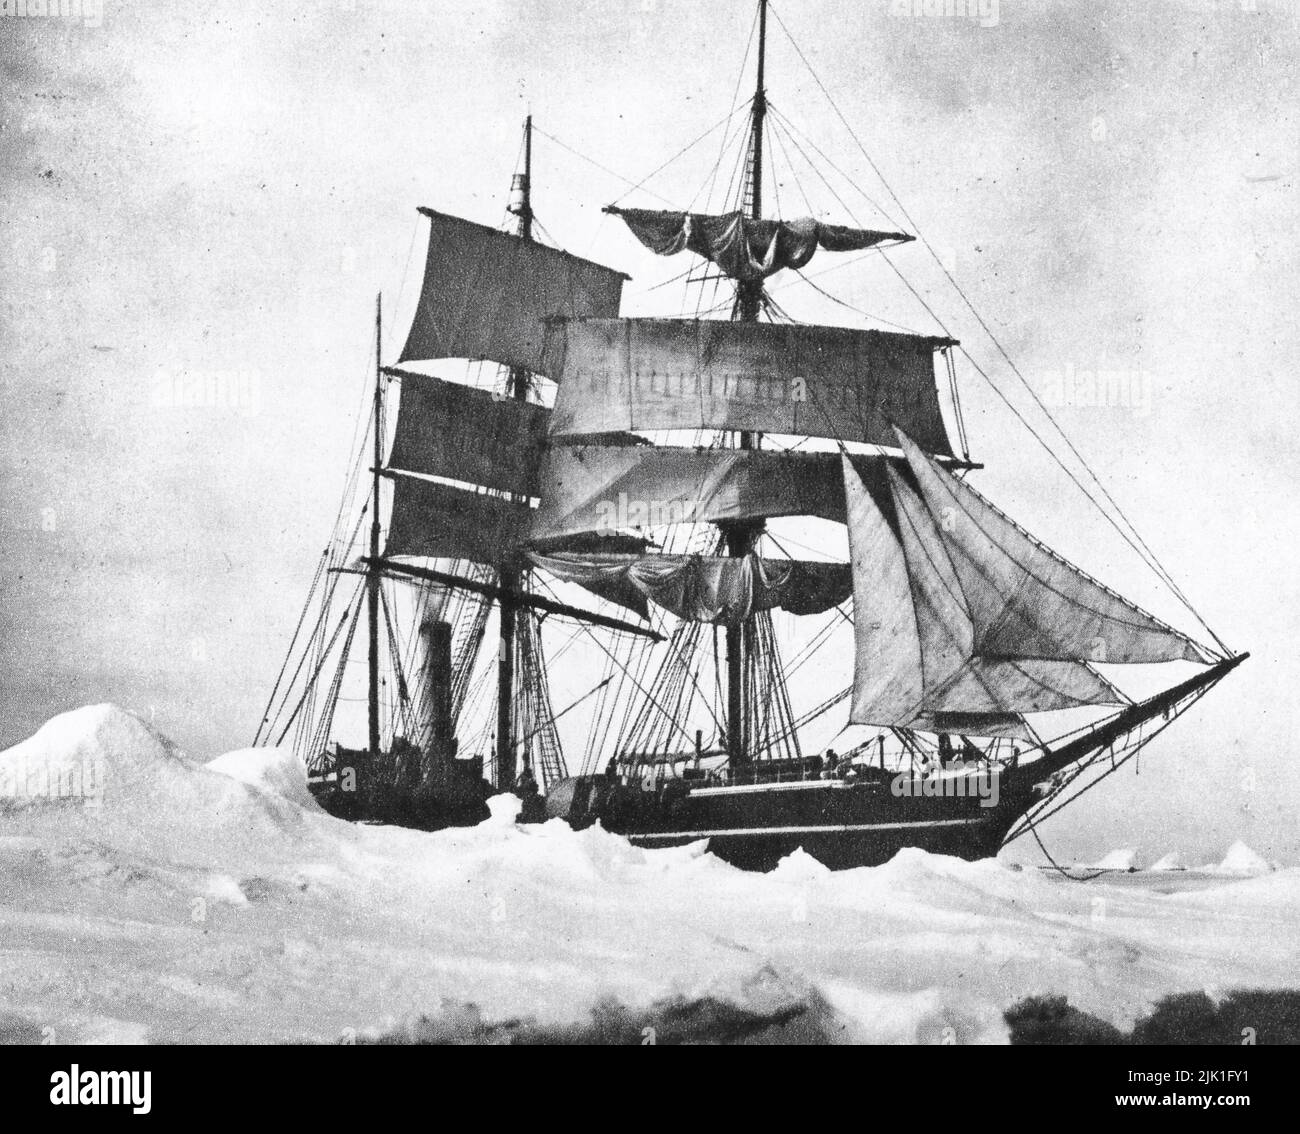 Terra Nova, gefangen in Heavy Pack, 1910. Von Herbert Ponting (1870-1935). Die Terra Nova Expedition (Britische Antarktis-Expedition) war eine Expedition in die Antarktis, die zwischen 1910 und 1913 stattfand. Unter der Leitung von Kapitän Robert Falcon Scott (1868-1912), der als erster den geographischen Südpol erreichen wollte. Am 17.. Januar 1912 erreichten er und vier andere den Pol, wo sie herausfanden, dass ihnen ein norwegisches Team unter der Leitung von Roald Amundsen (1872-1928) vorausgegangen war. Scotts Fünfergruppe starb auf der Rückreise von der Stange. Stockfoto